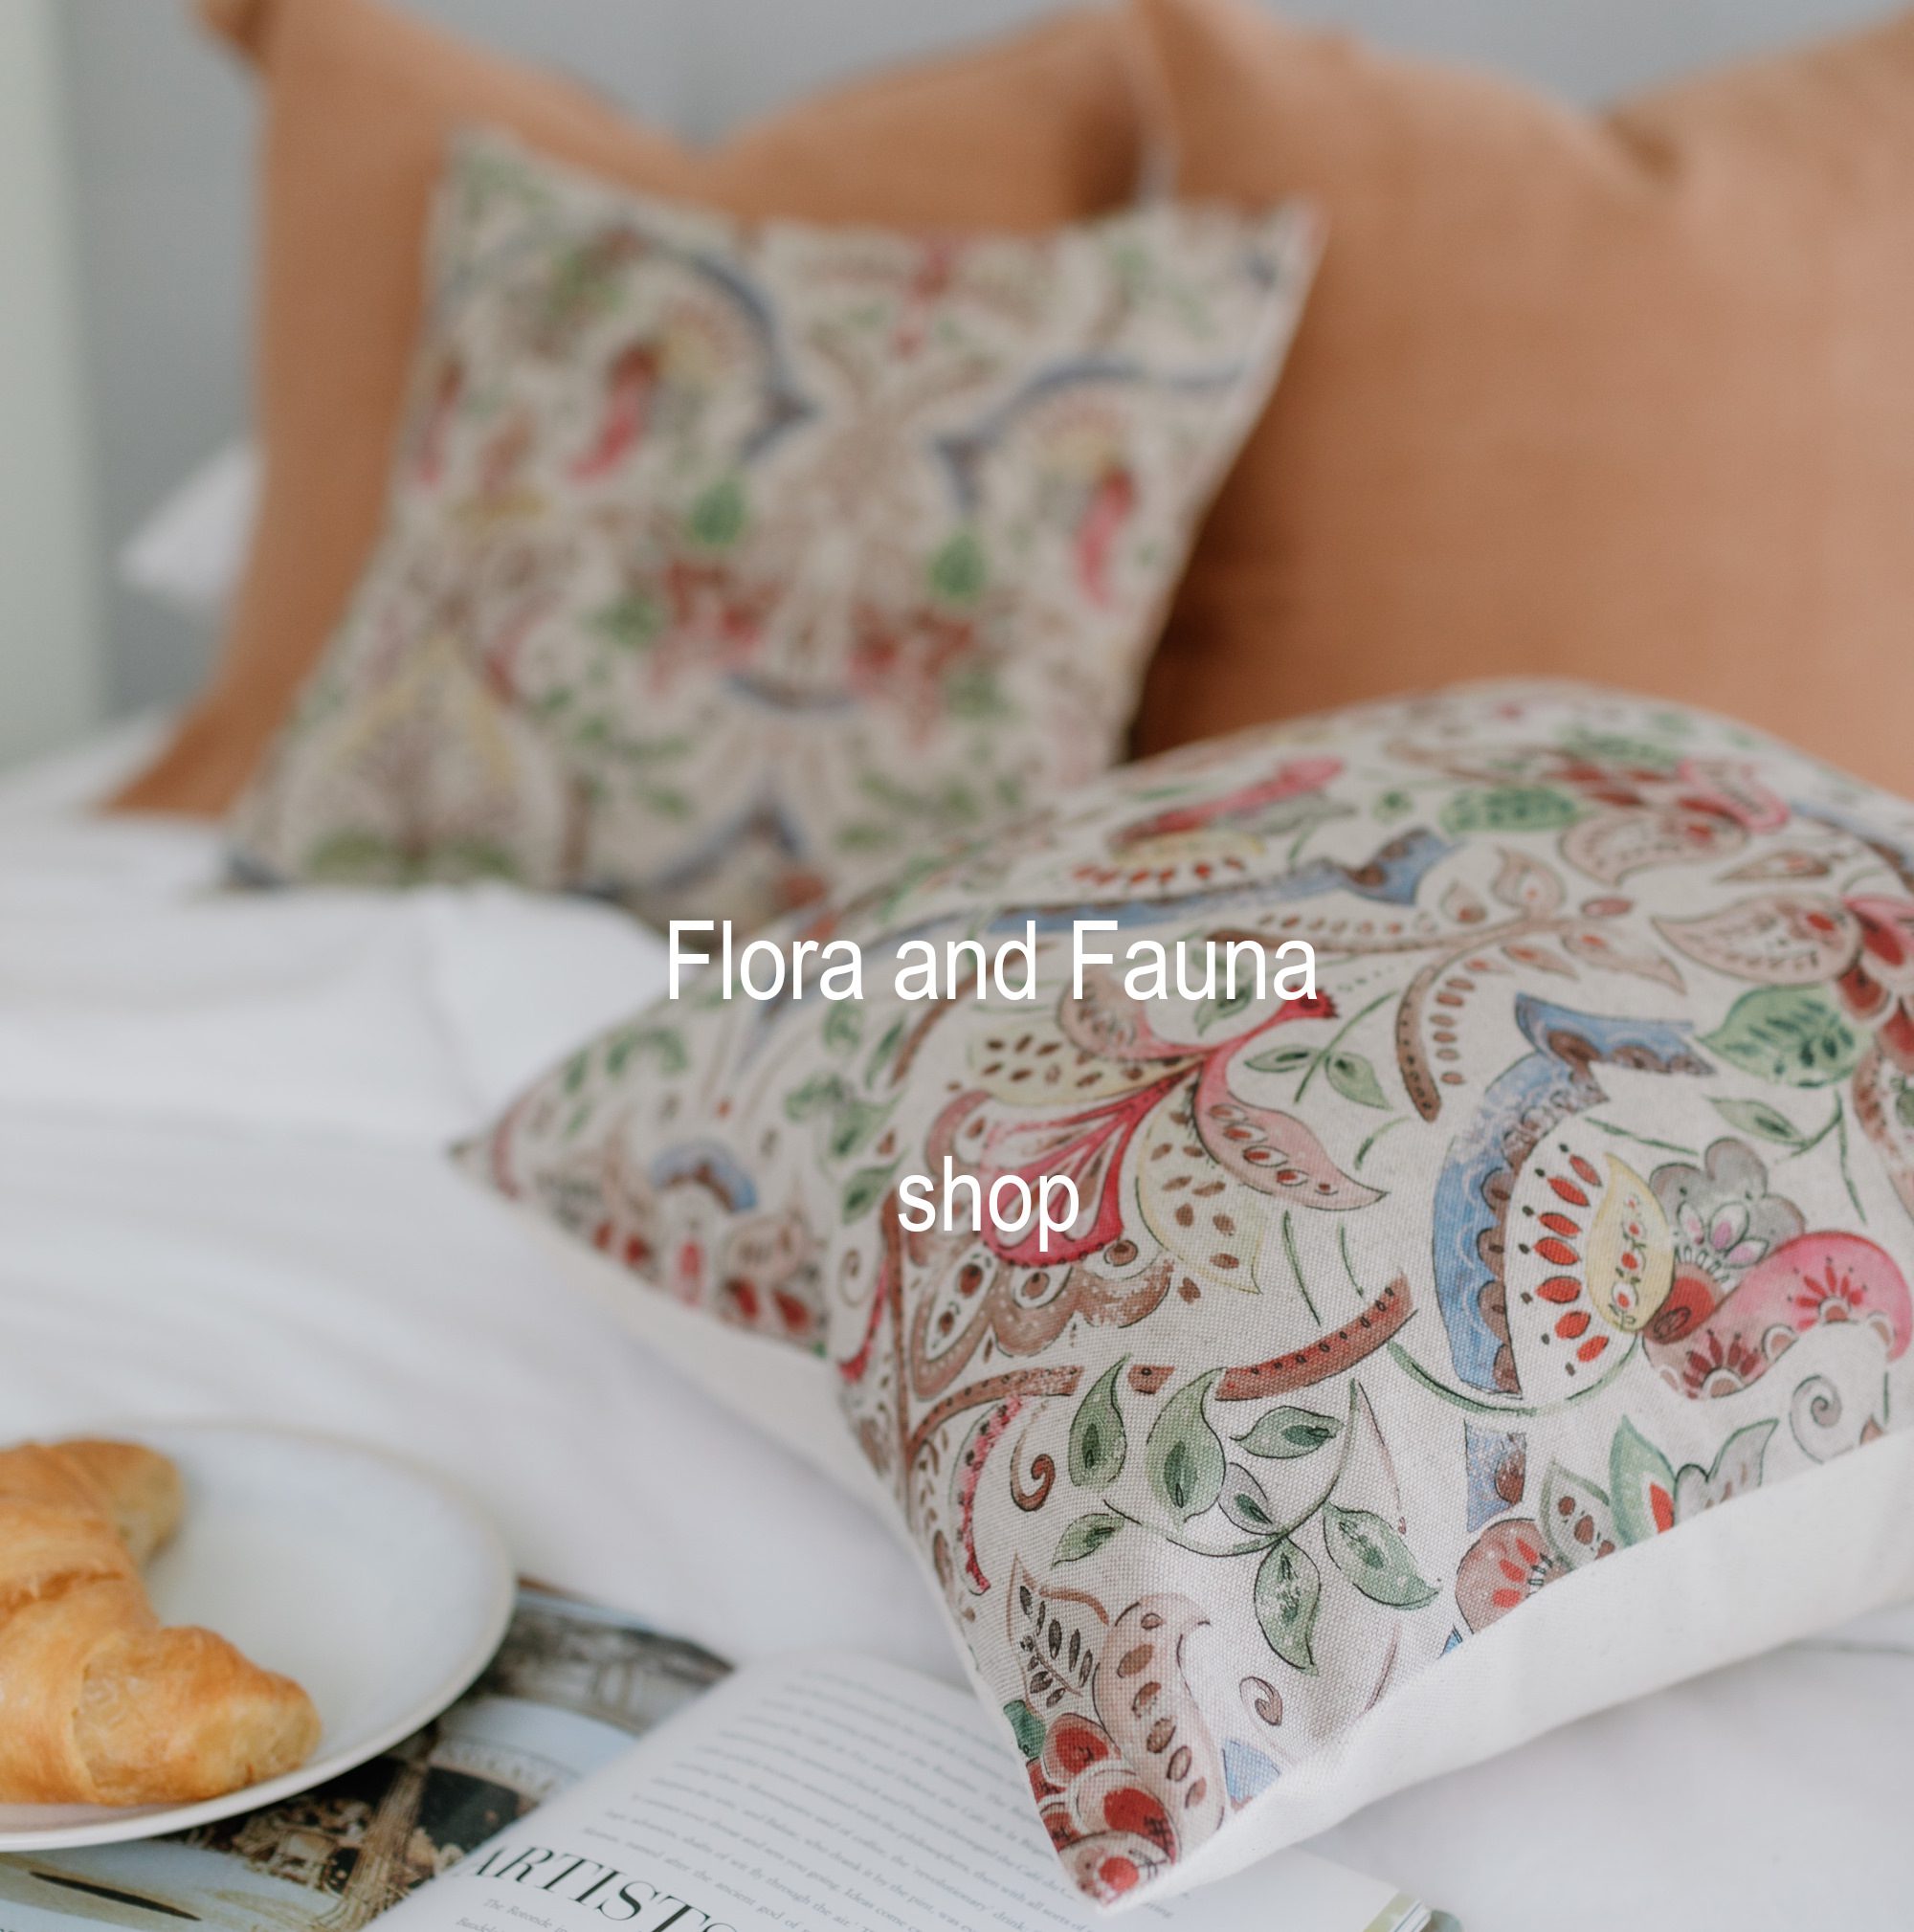 Flora and Fauna Pillows